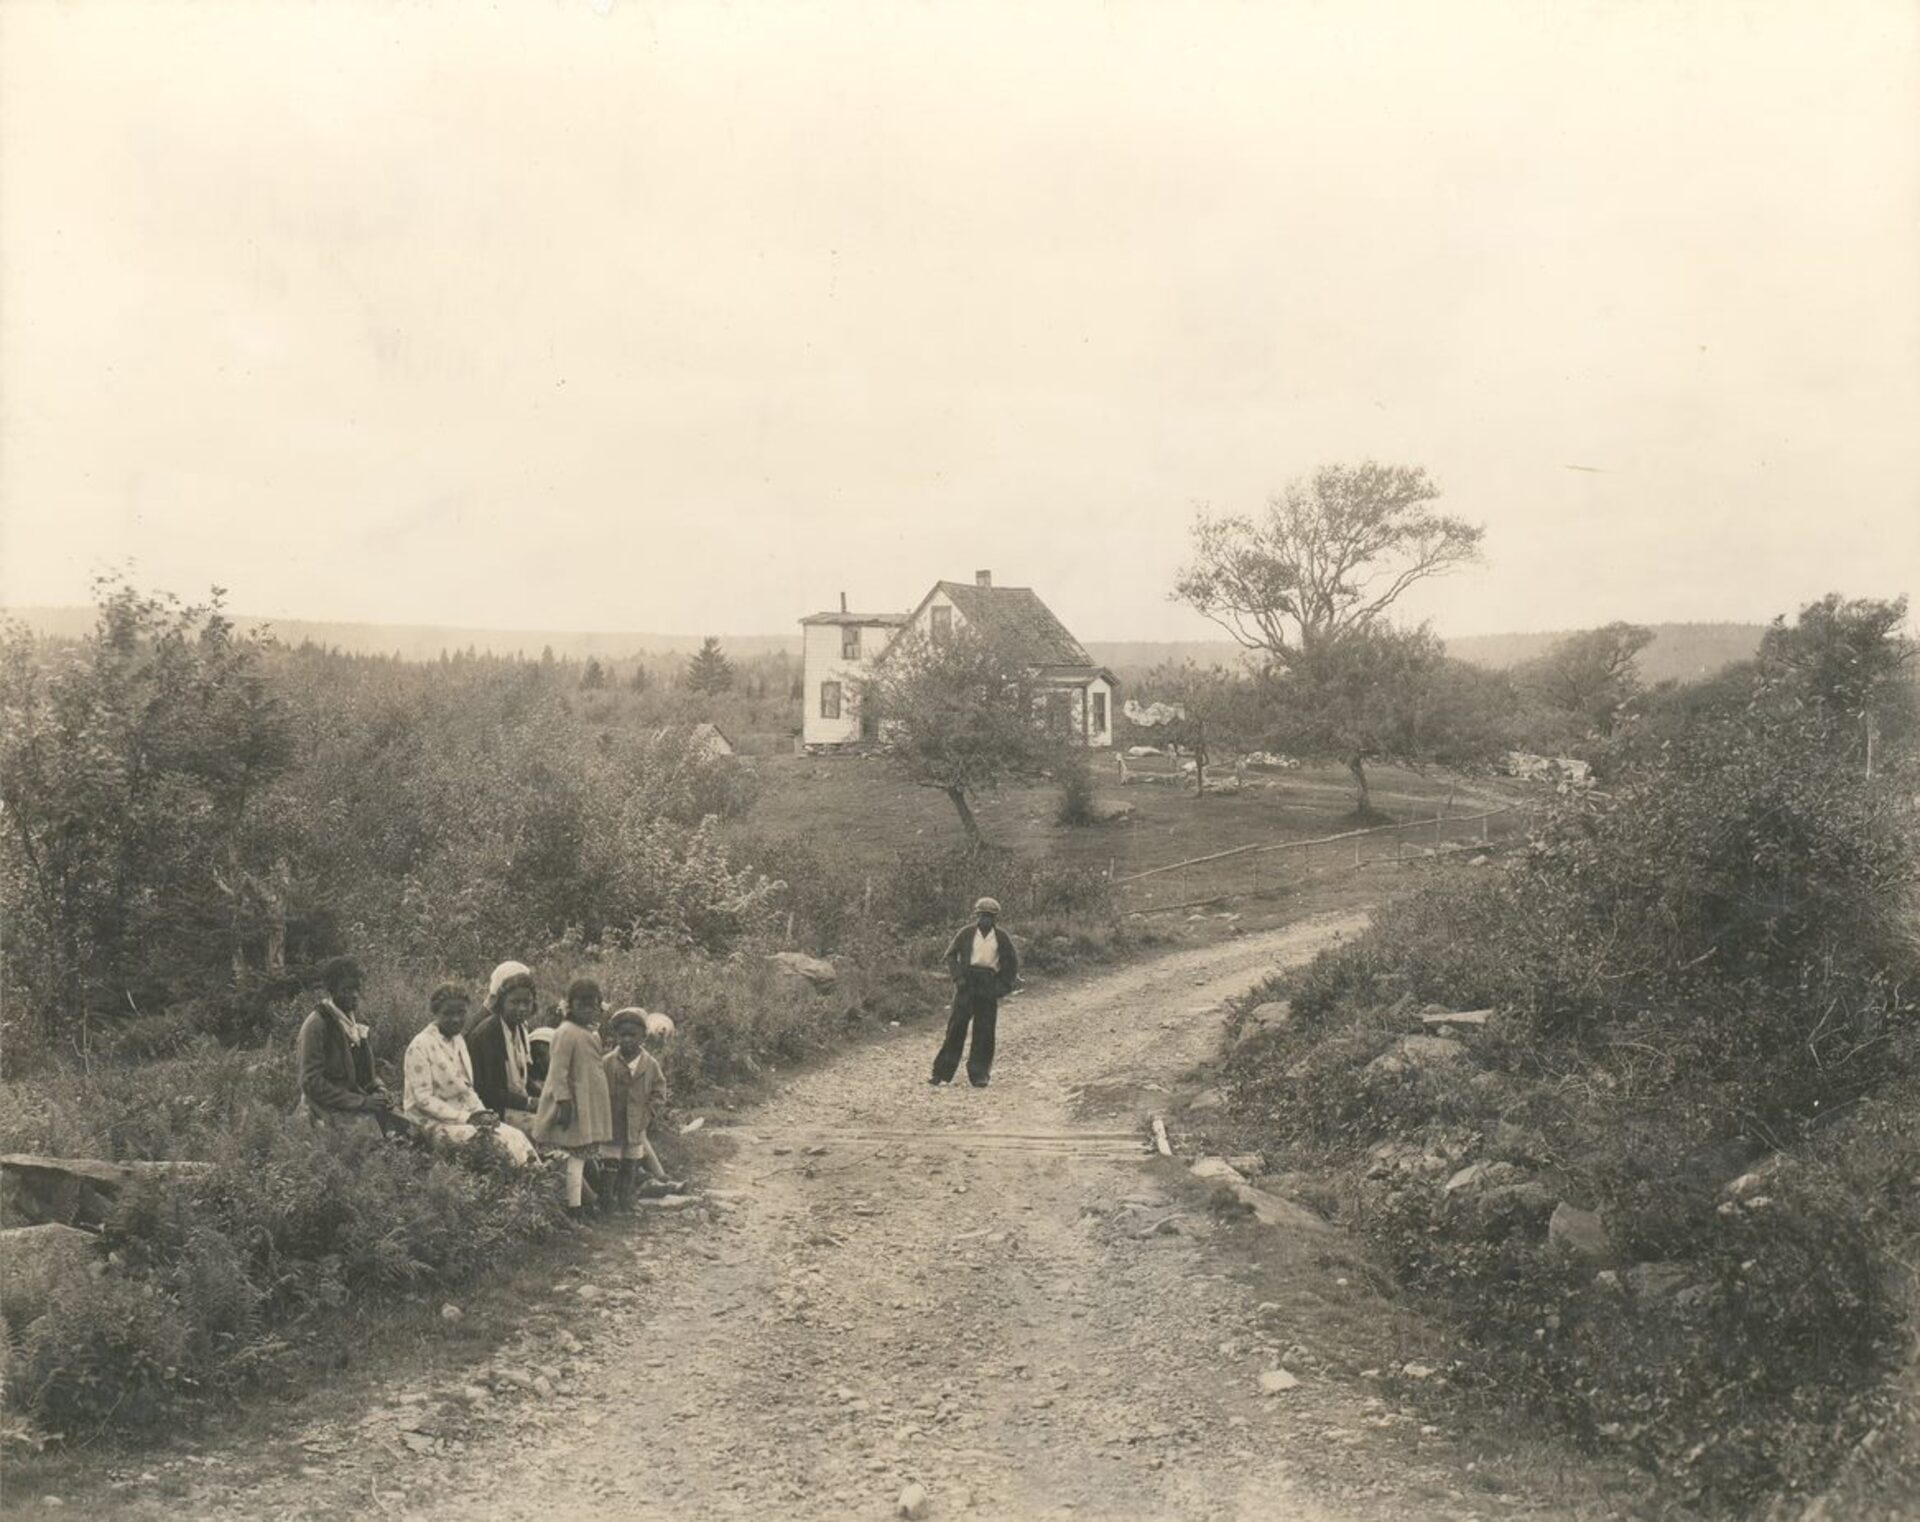 A group of children on a dirt road, with a building in the background. - Un groupe d’enfants sur un chemin de terre, avec un bâtiment à l’arrière-plan.